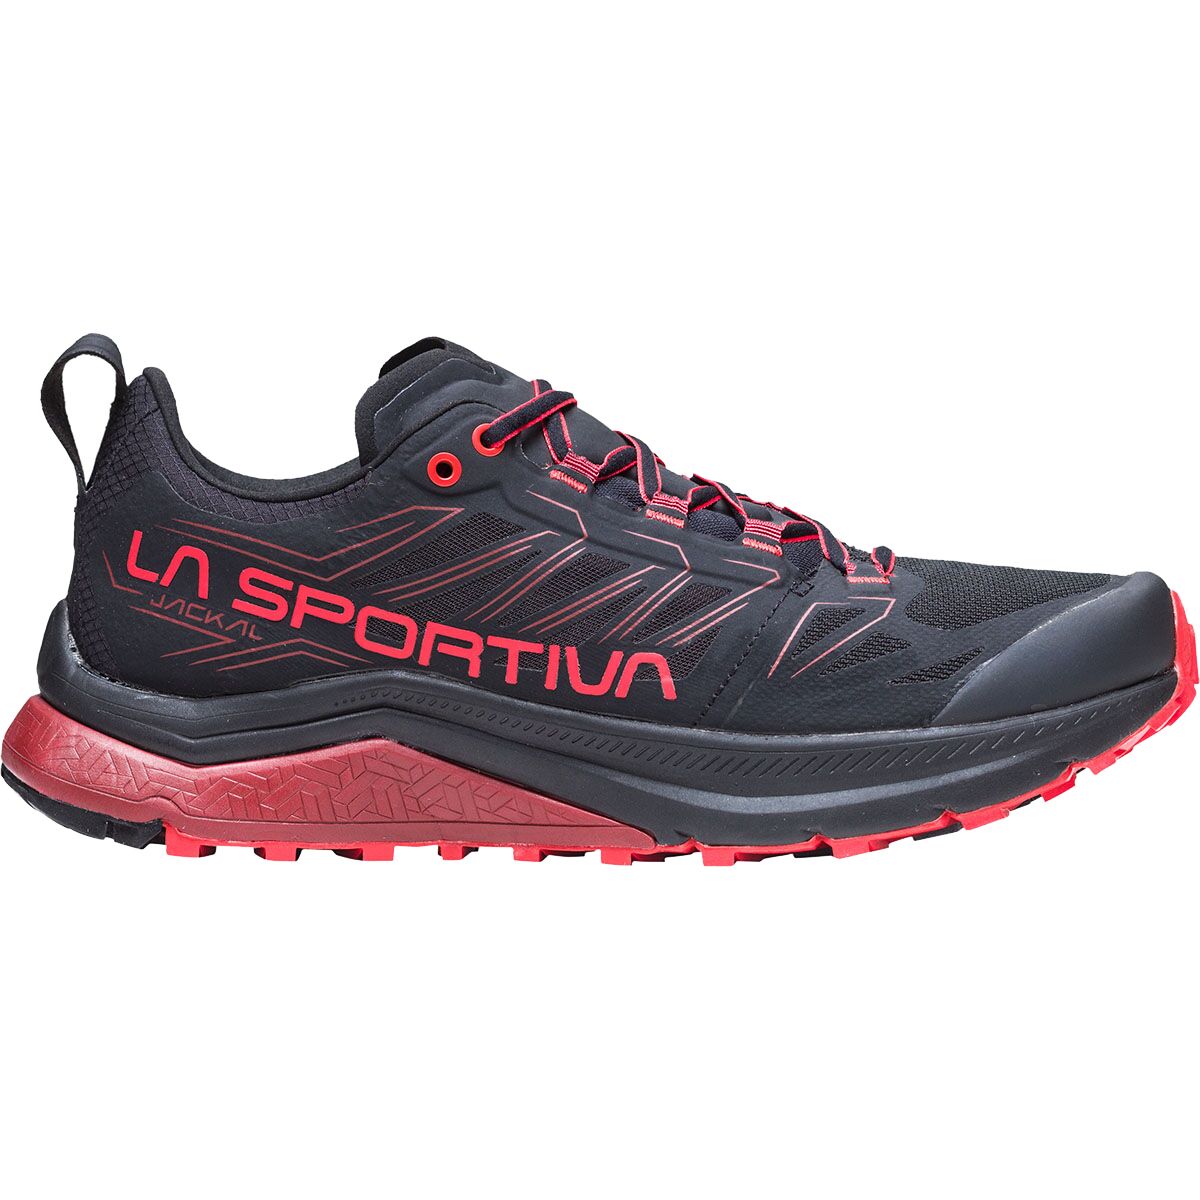 La Sportiva Jackal Trail Running Shoe - Men's